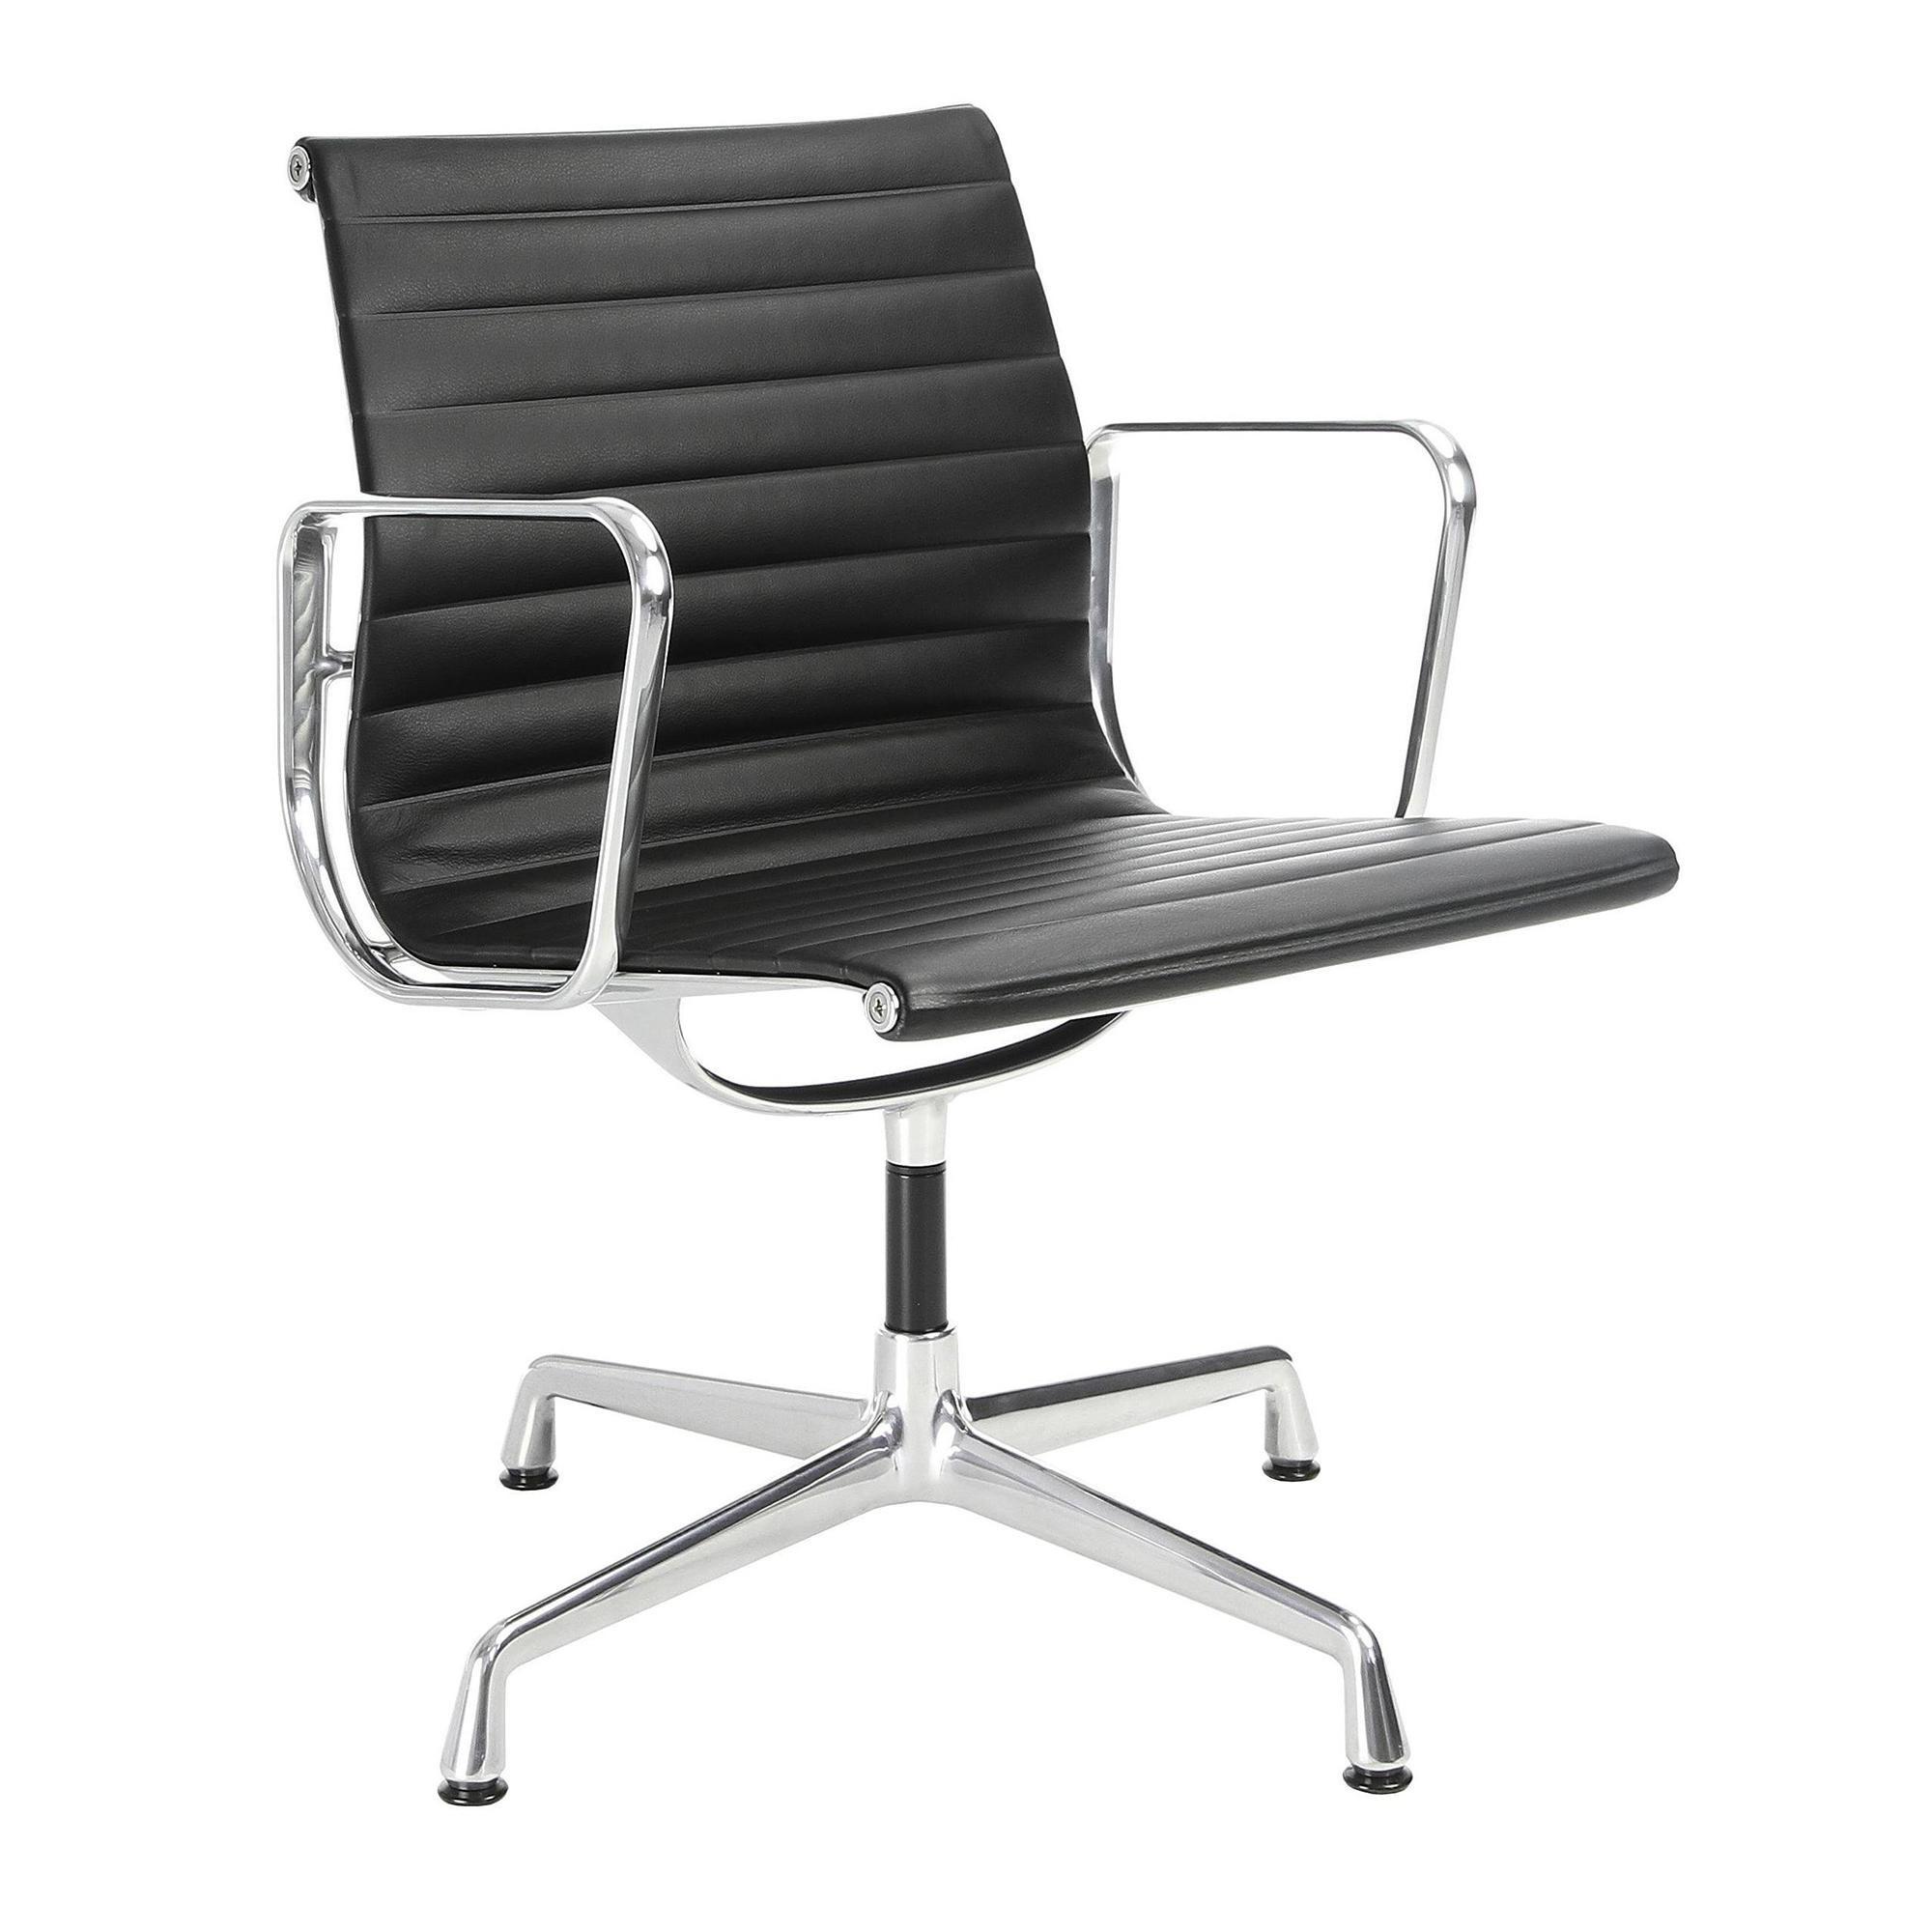 Офисное кресло m5. Vitra кресло офисное. Кресло Витра офисное. Дизайнерские офисные кресла. Кресло алюминиевое.